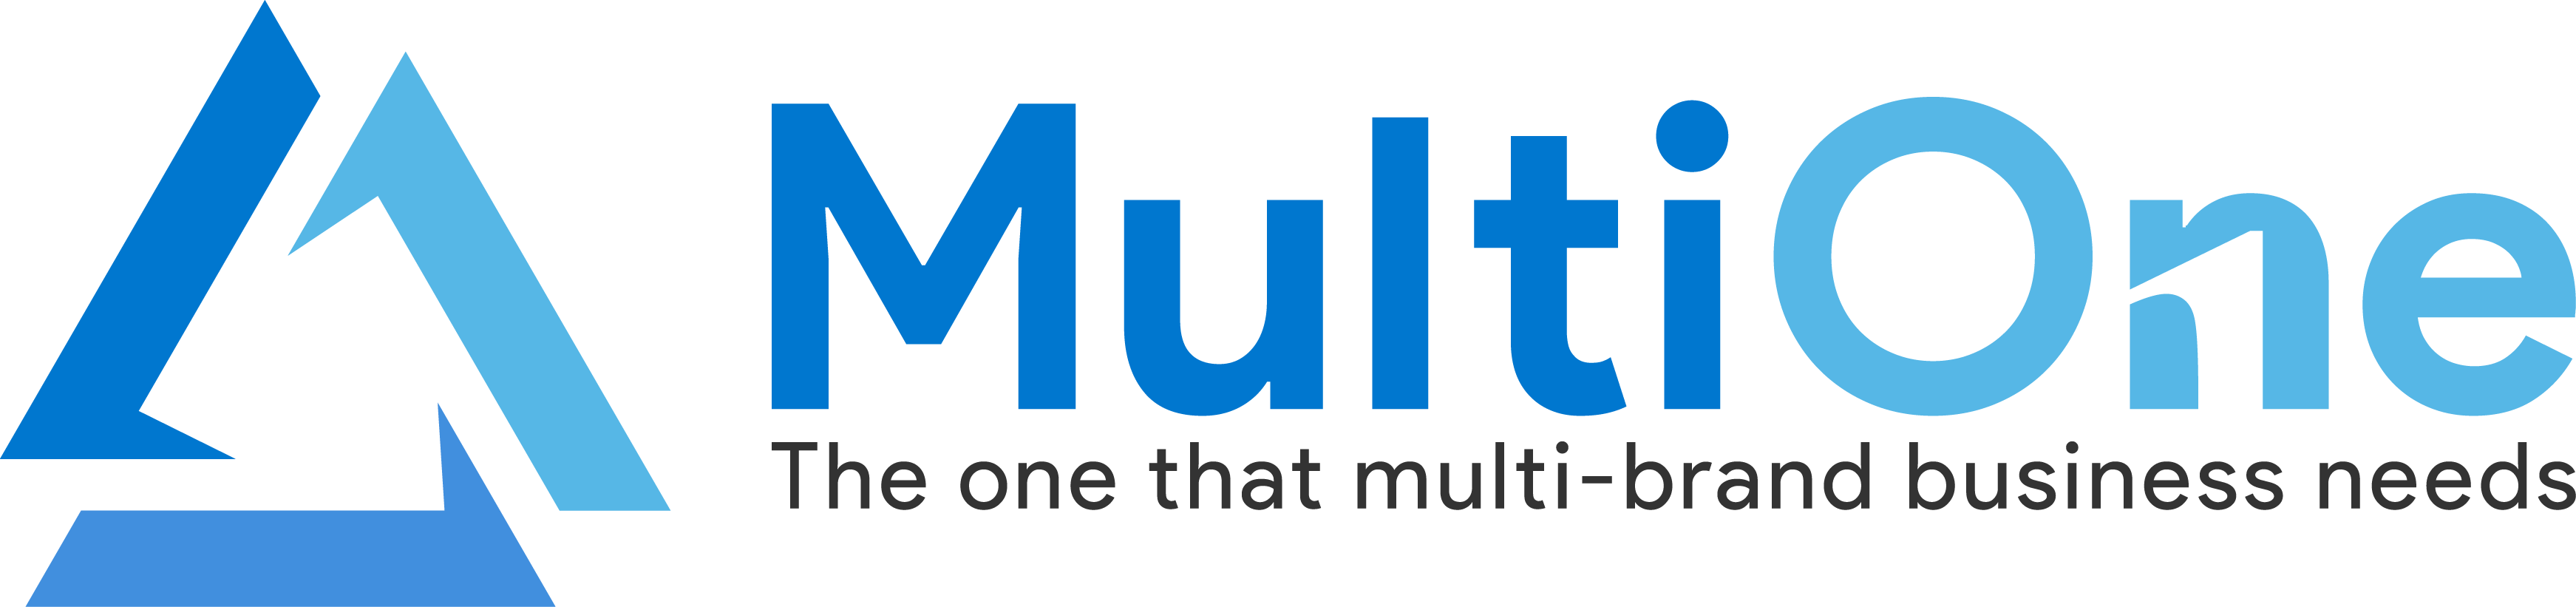 MultiOne-ระบบเดียวที่ธุรกิจ Multibramd ต้องการ